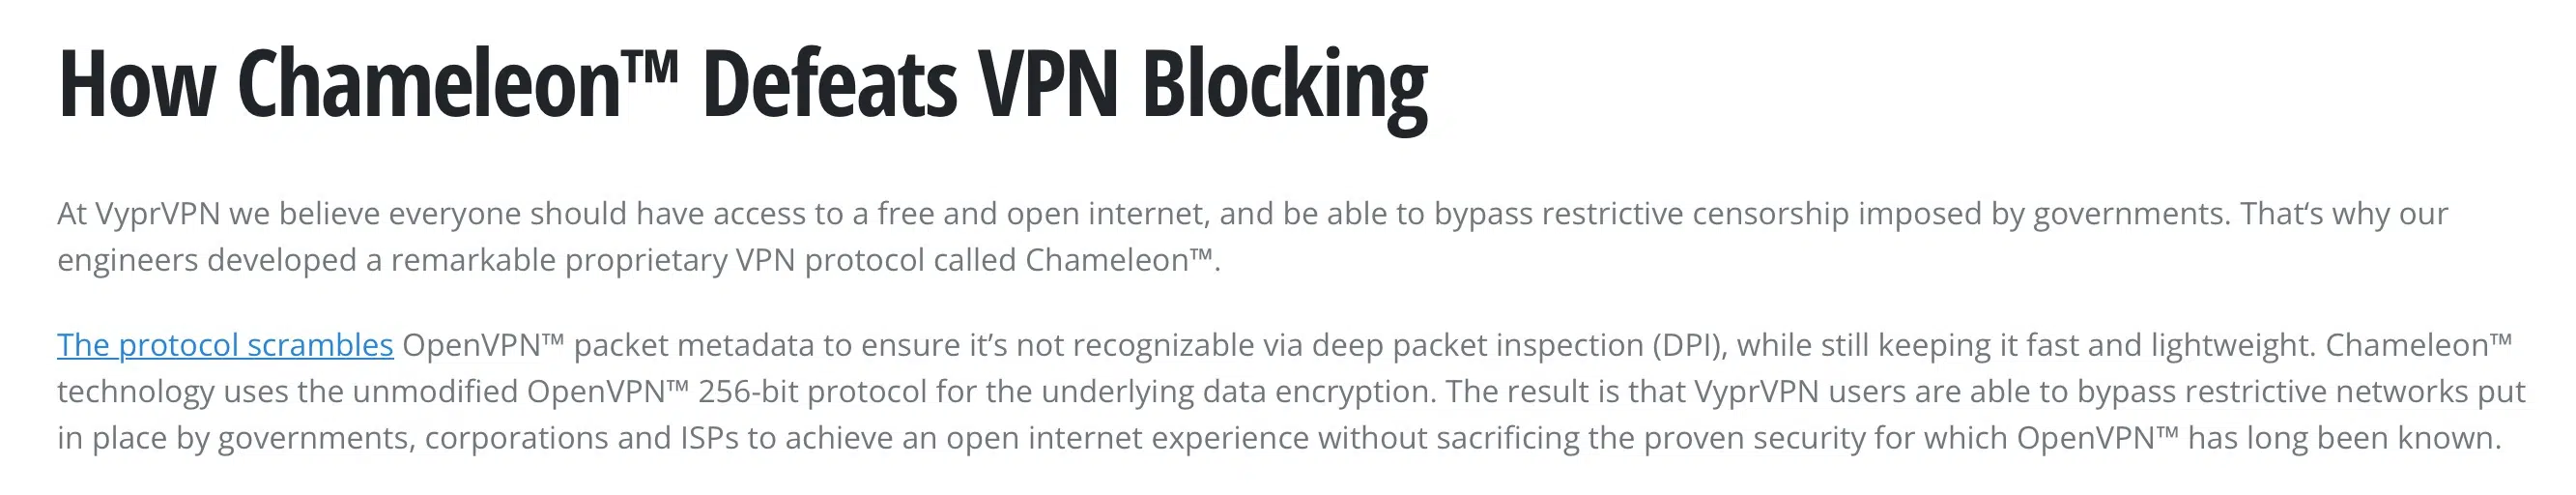 VyprVPN - Chameleon Encryption